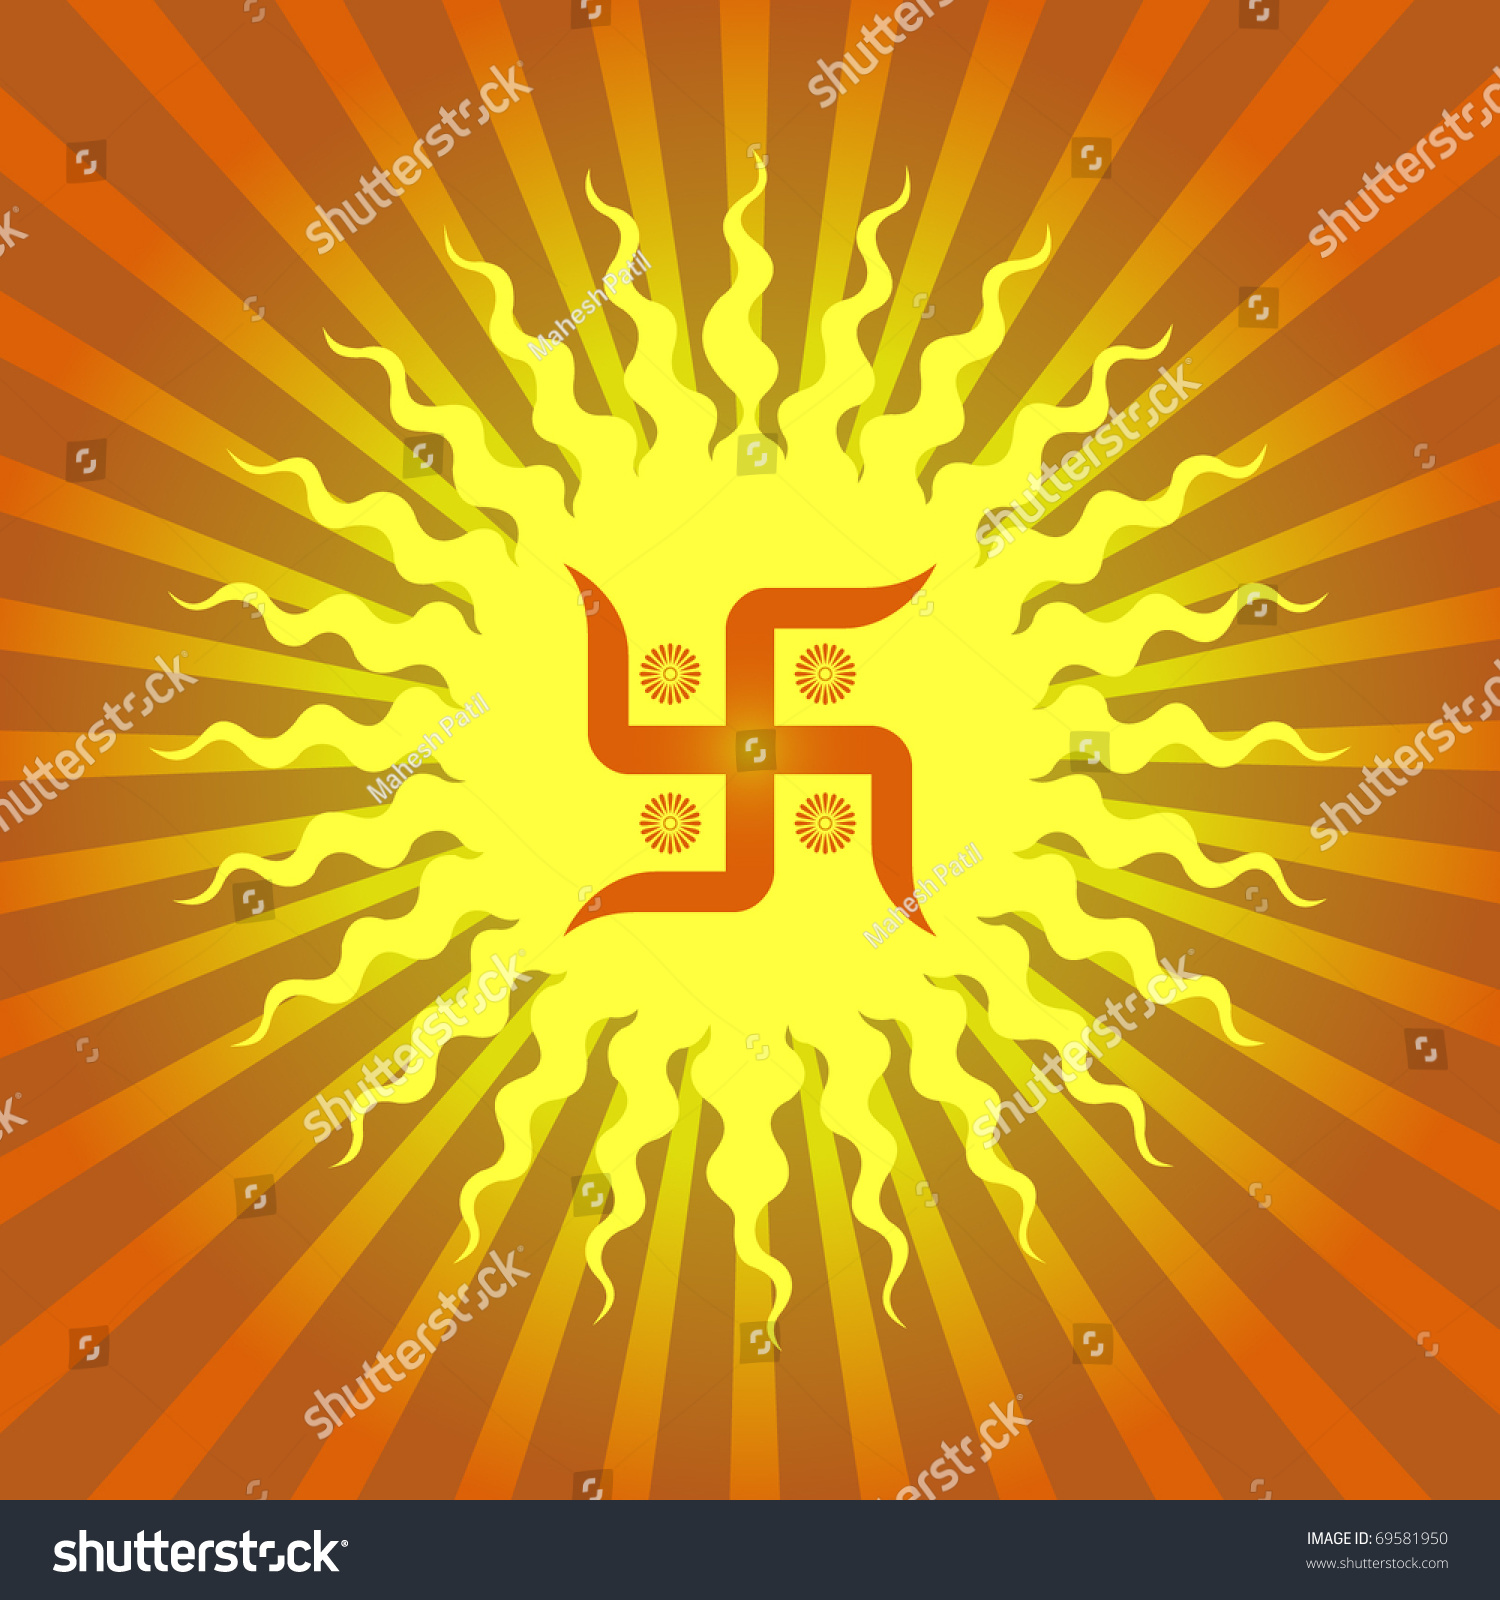 Swastika On Sun Burst Background Stock Vector Illustration 69581950 ...